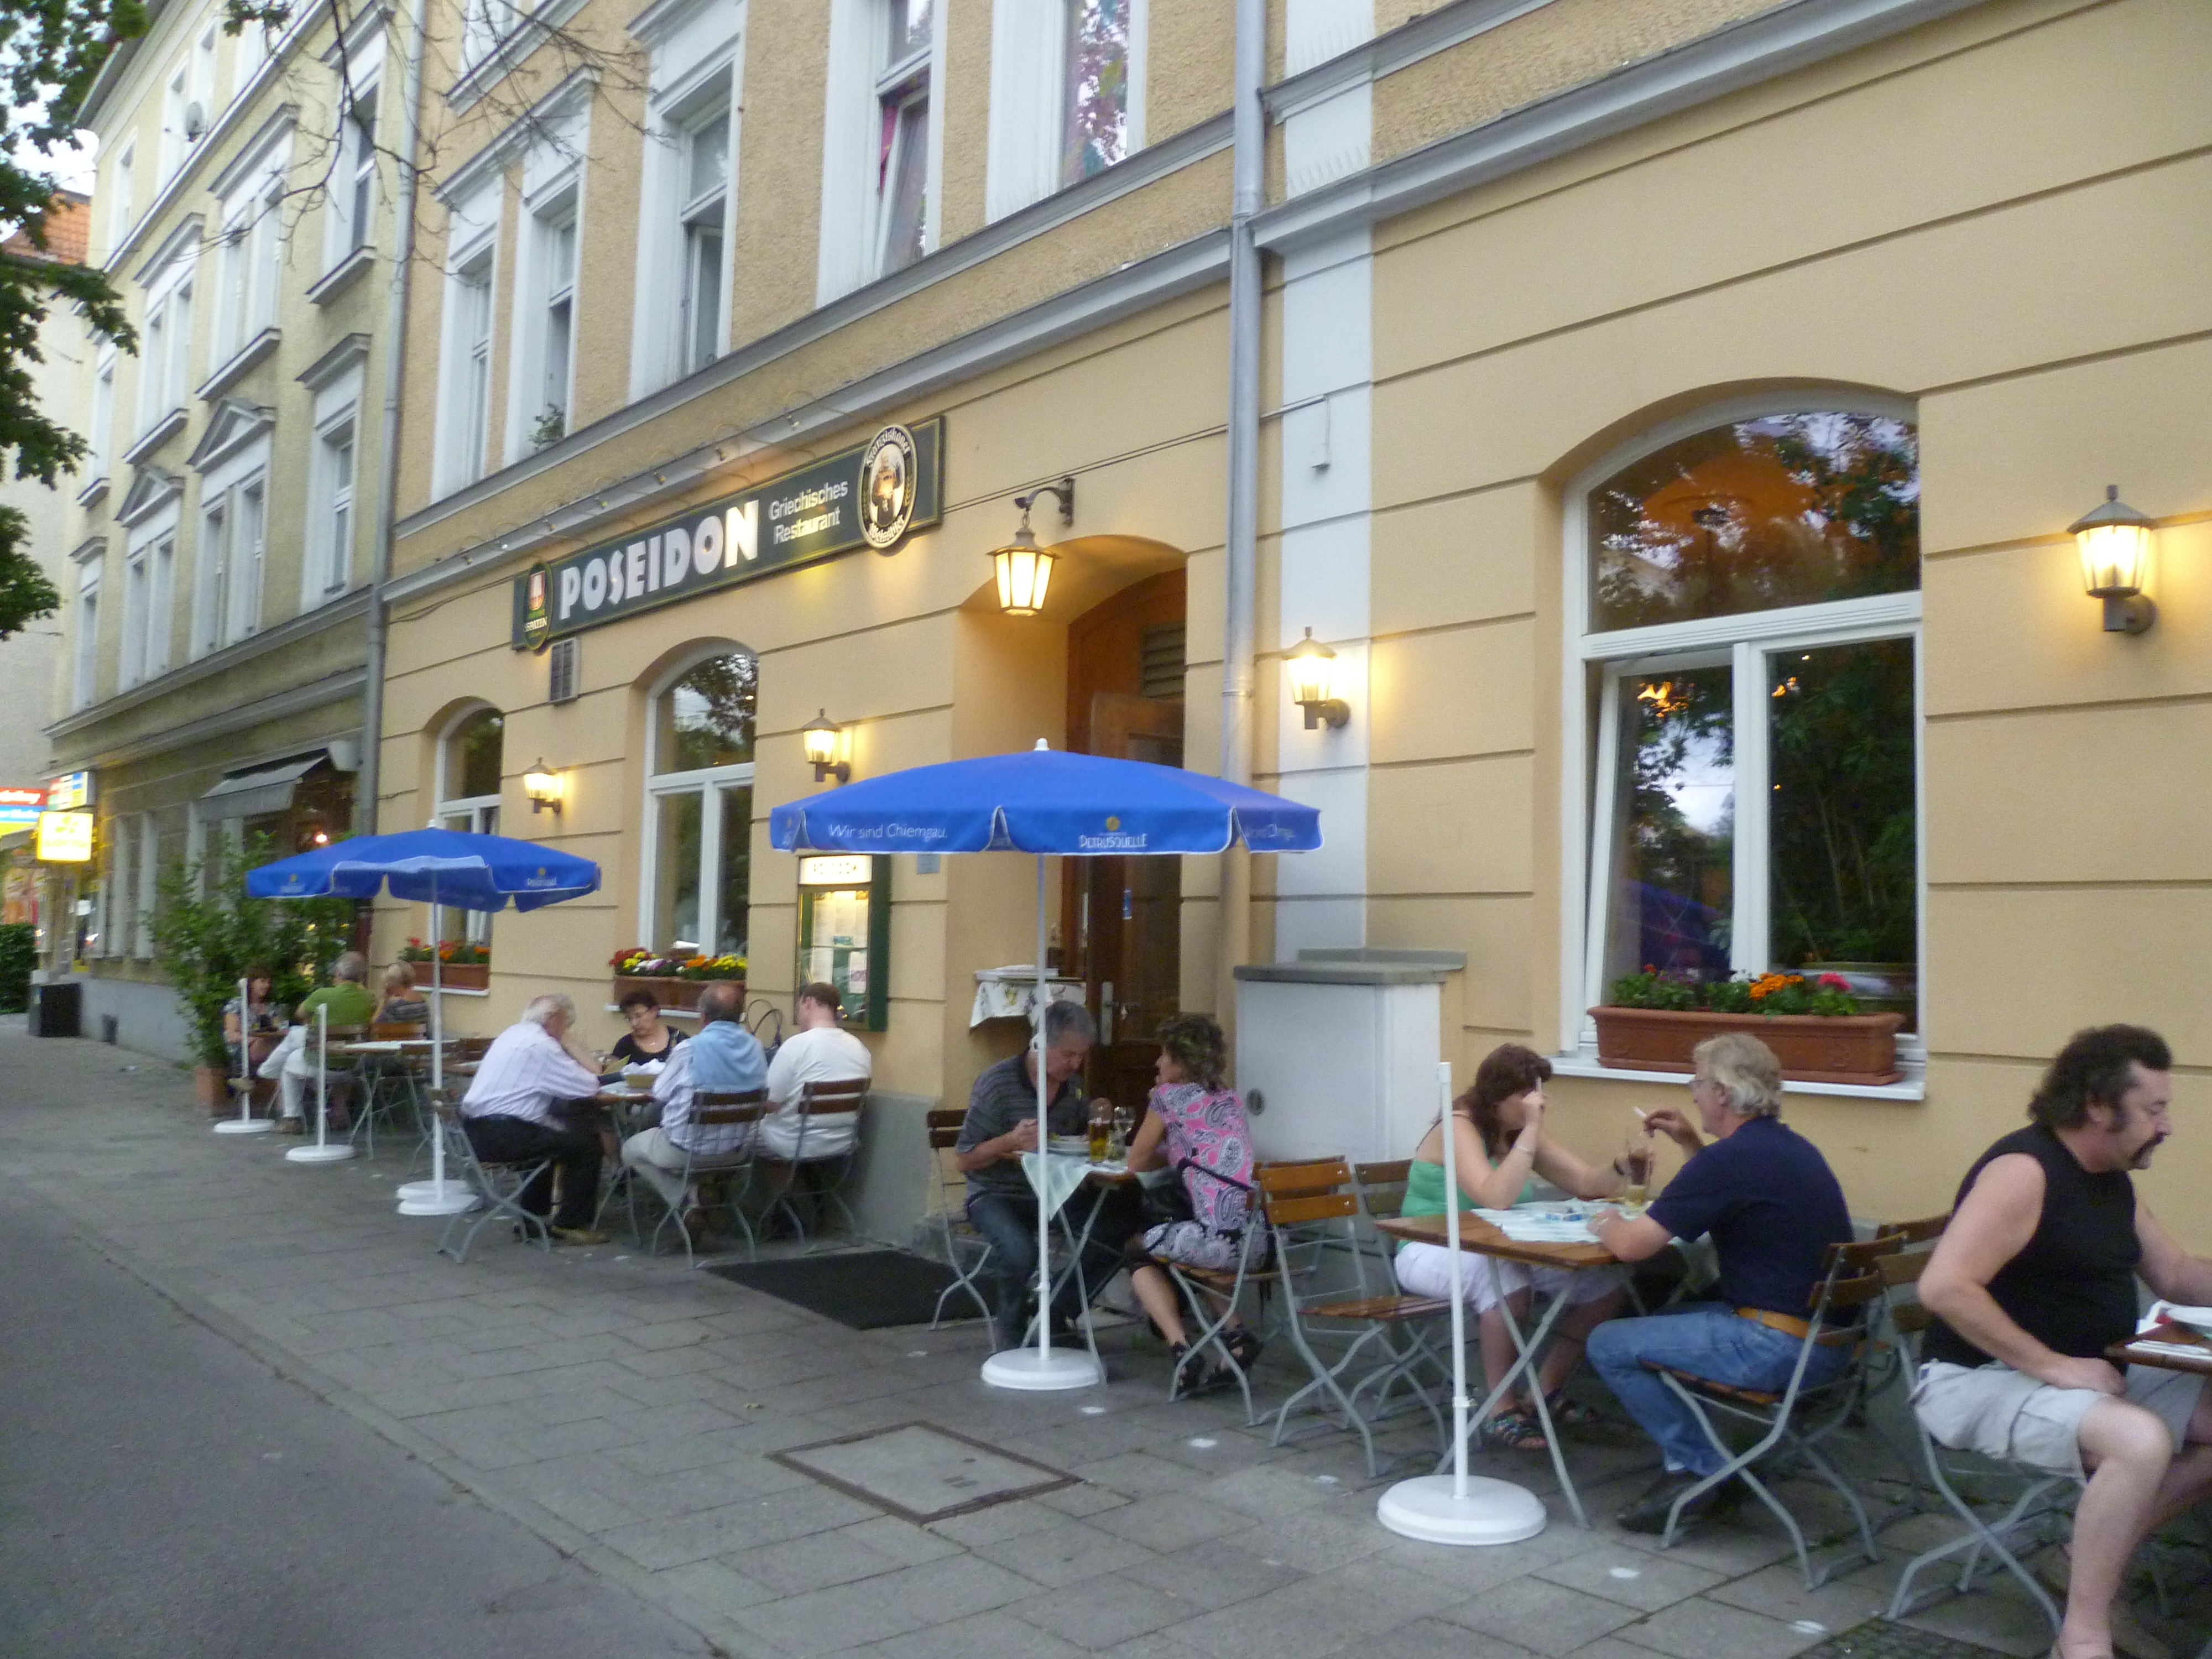 Bild 5 Poseidon Restaurant in München